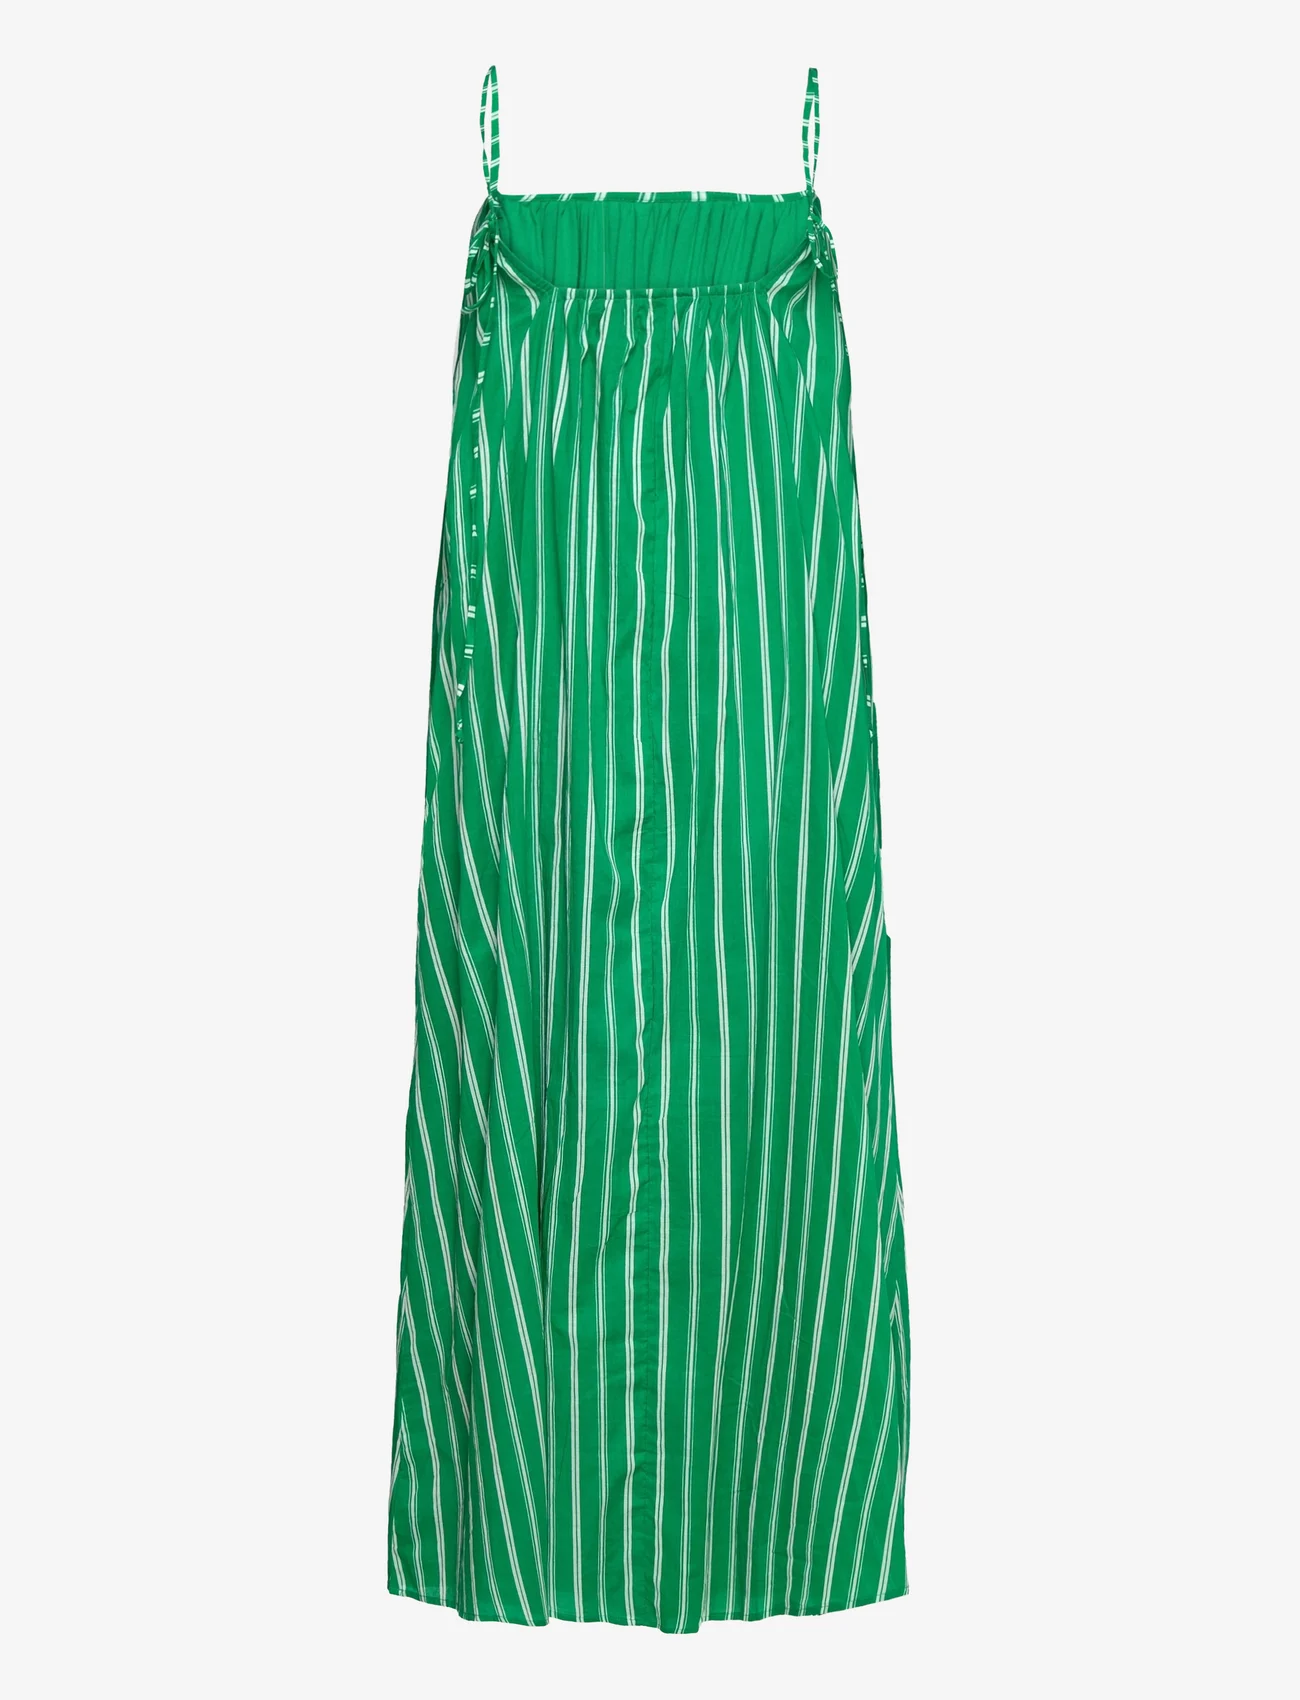 Faithfull The Brand - ILLIAS MAXI DRESS - kesämekot - maya stripe print - green - 1